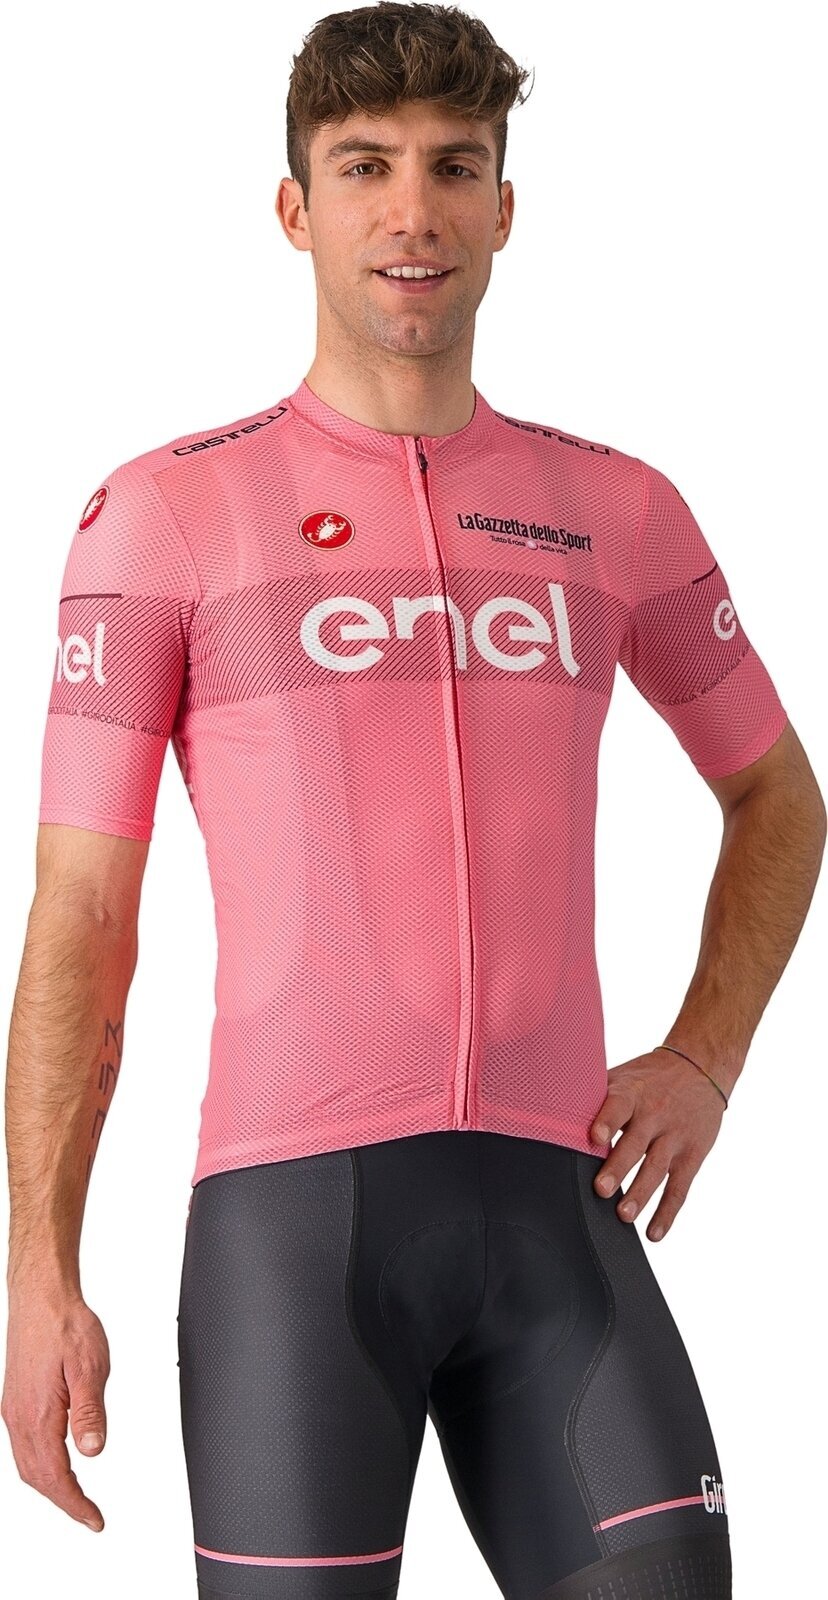 Jersey/T-Shirt Castelli Giro107 Classification Jersey Jersey Rosa Giro M